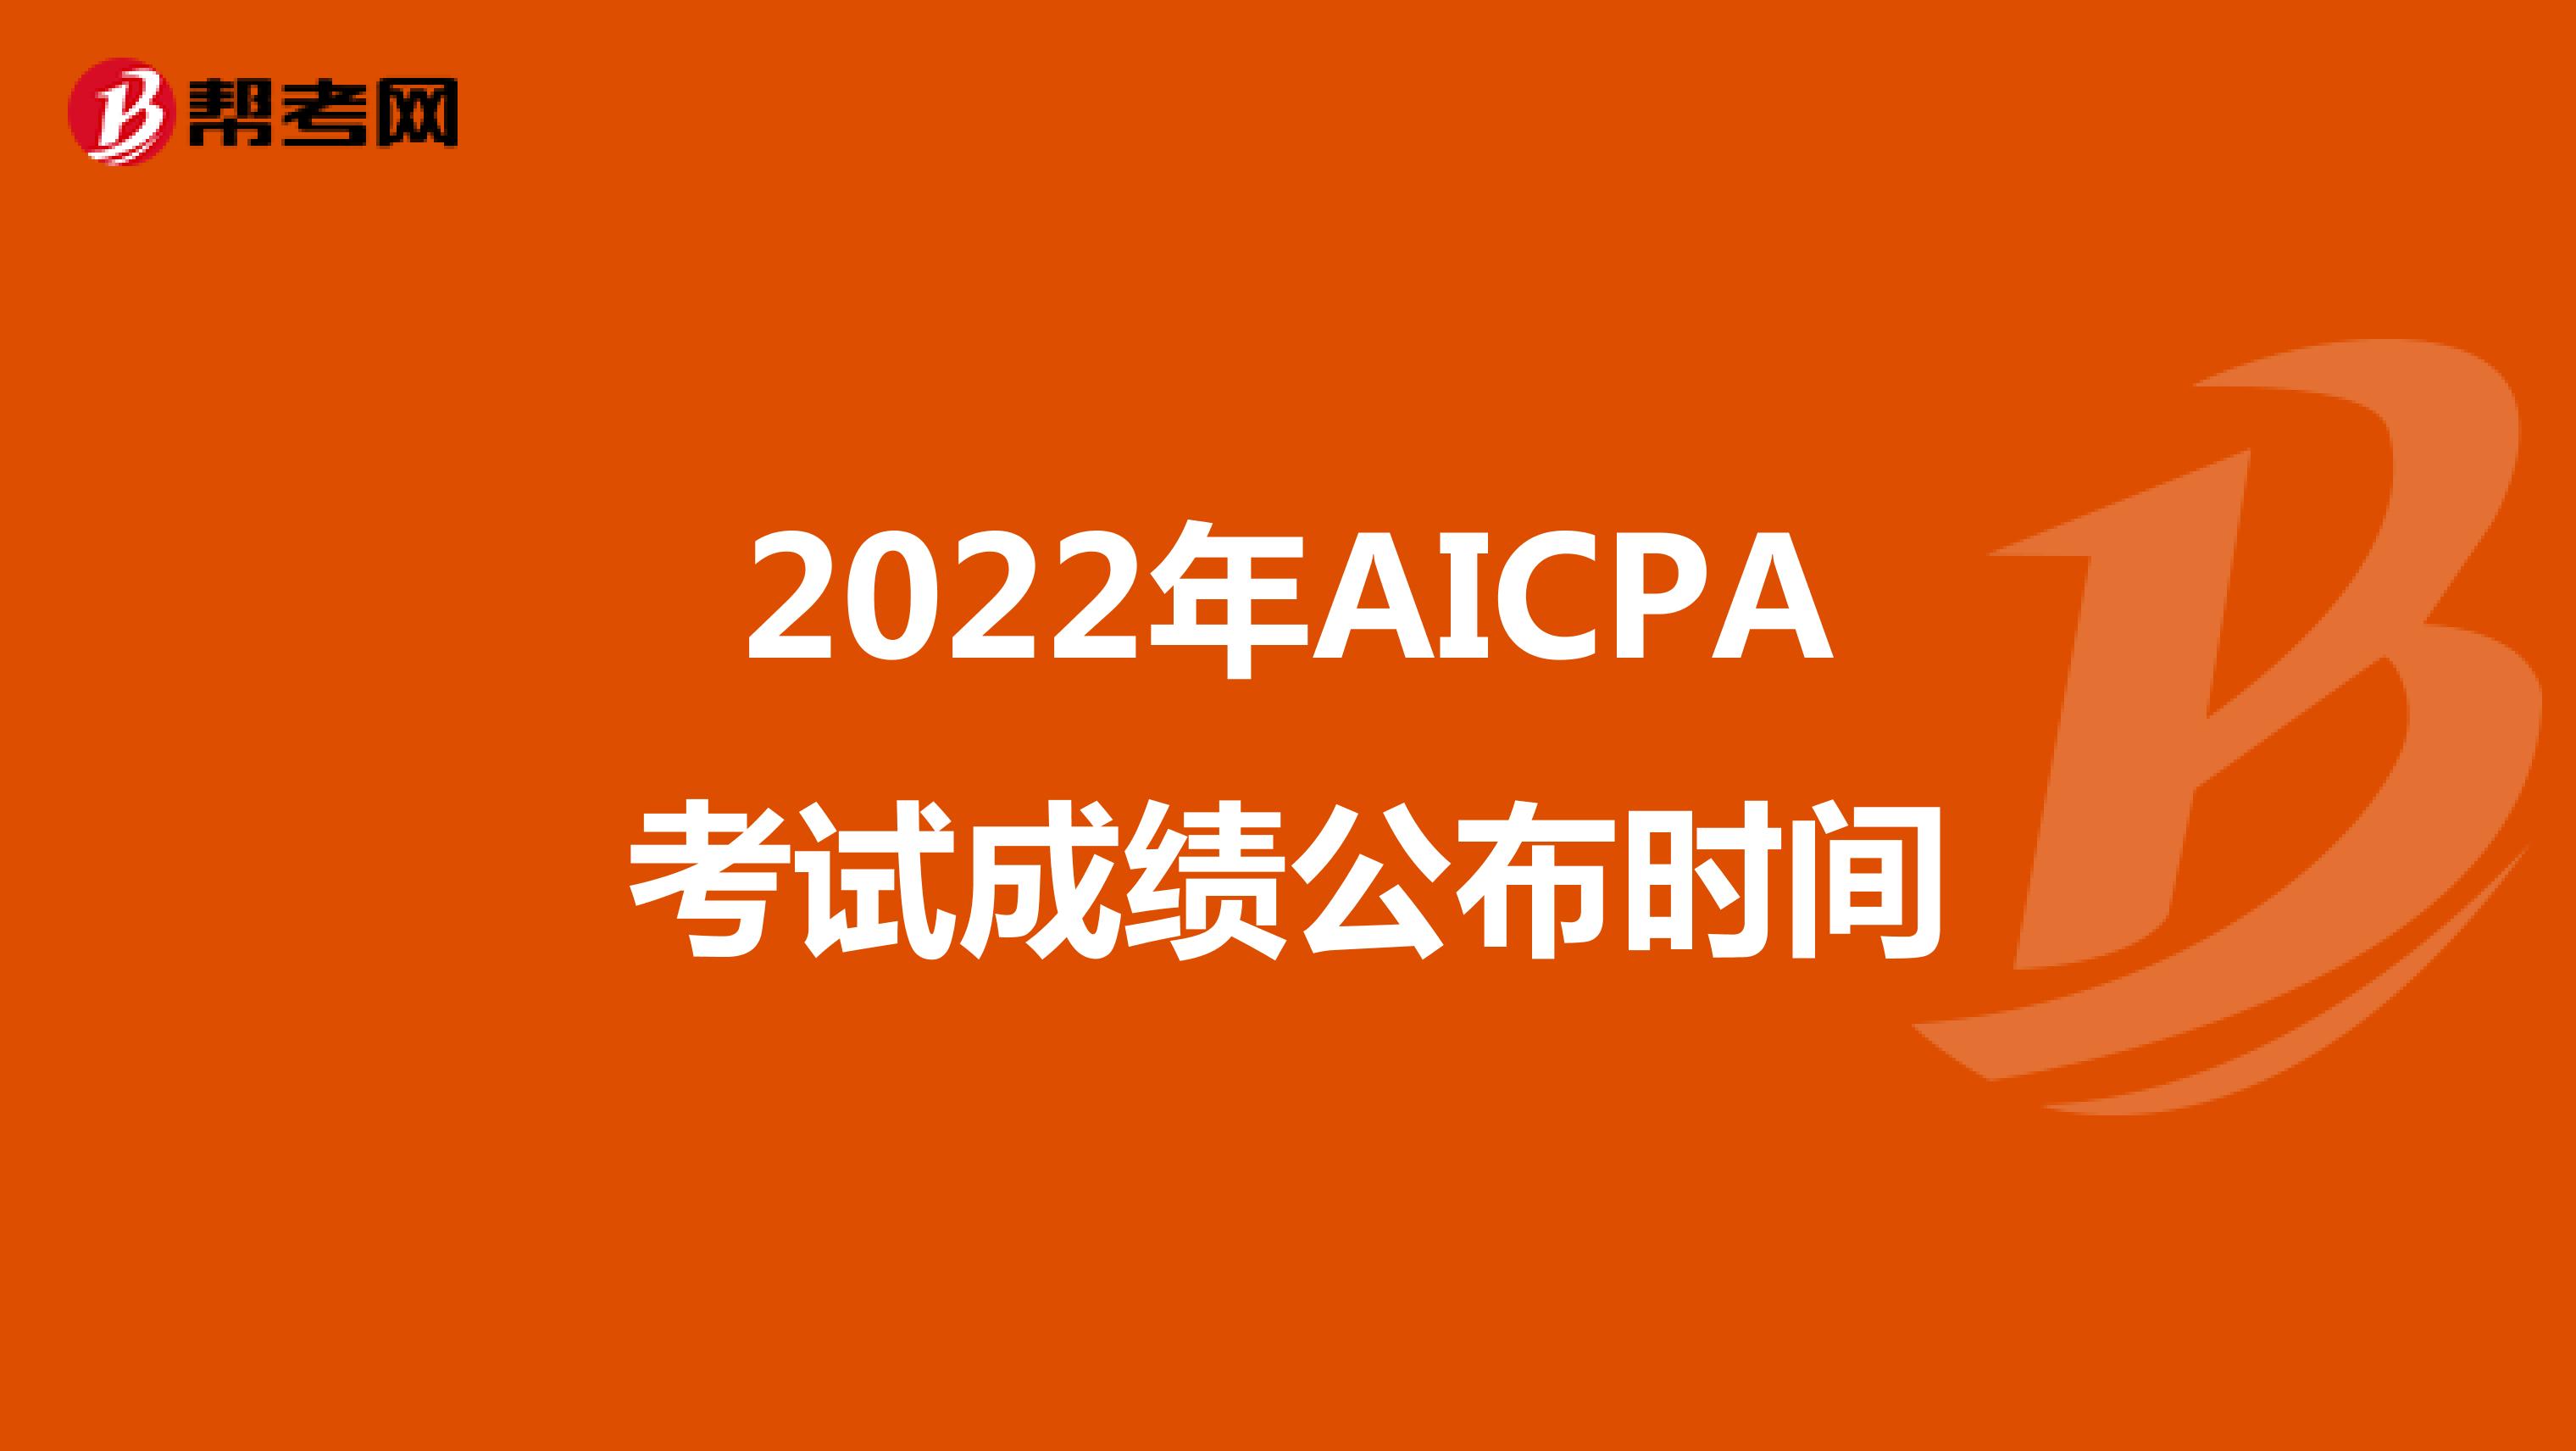 2022年AICPA考试成绩公布时间